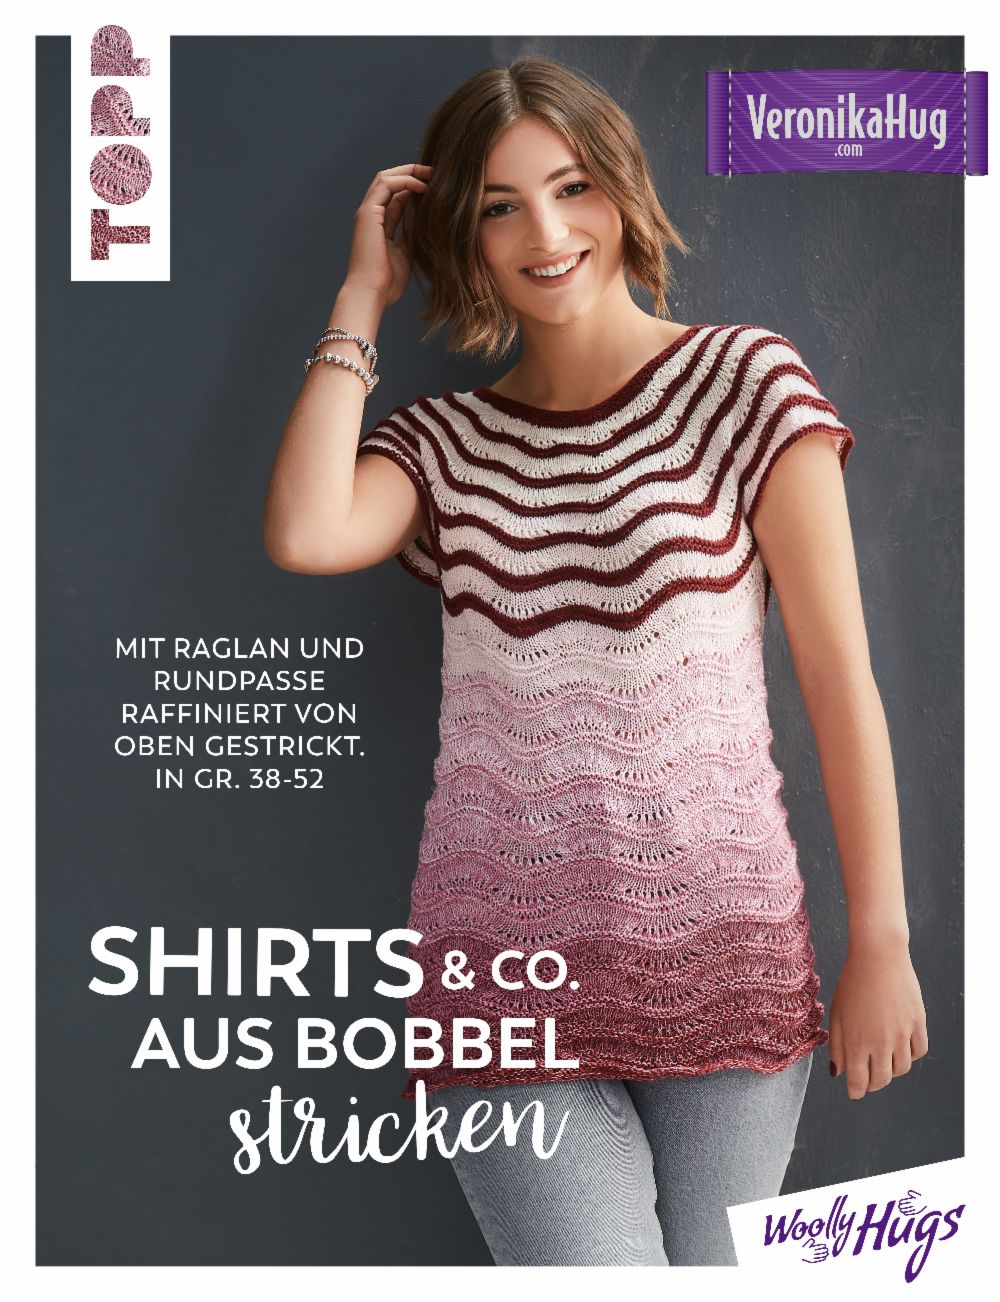 Shirts & Co. aus Bobbel stricken mit Wolly Hugs